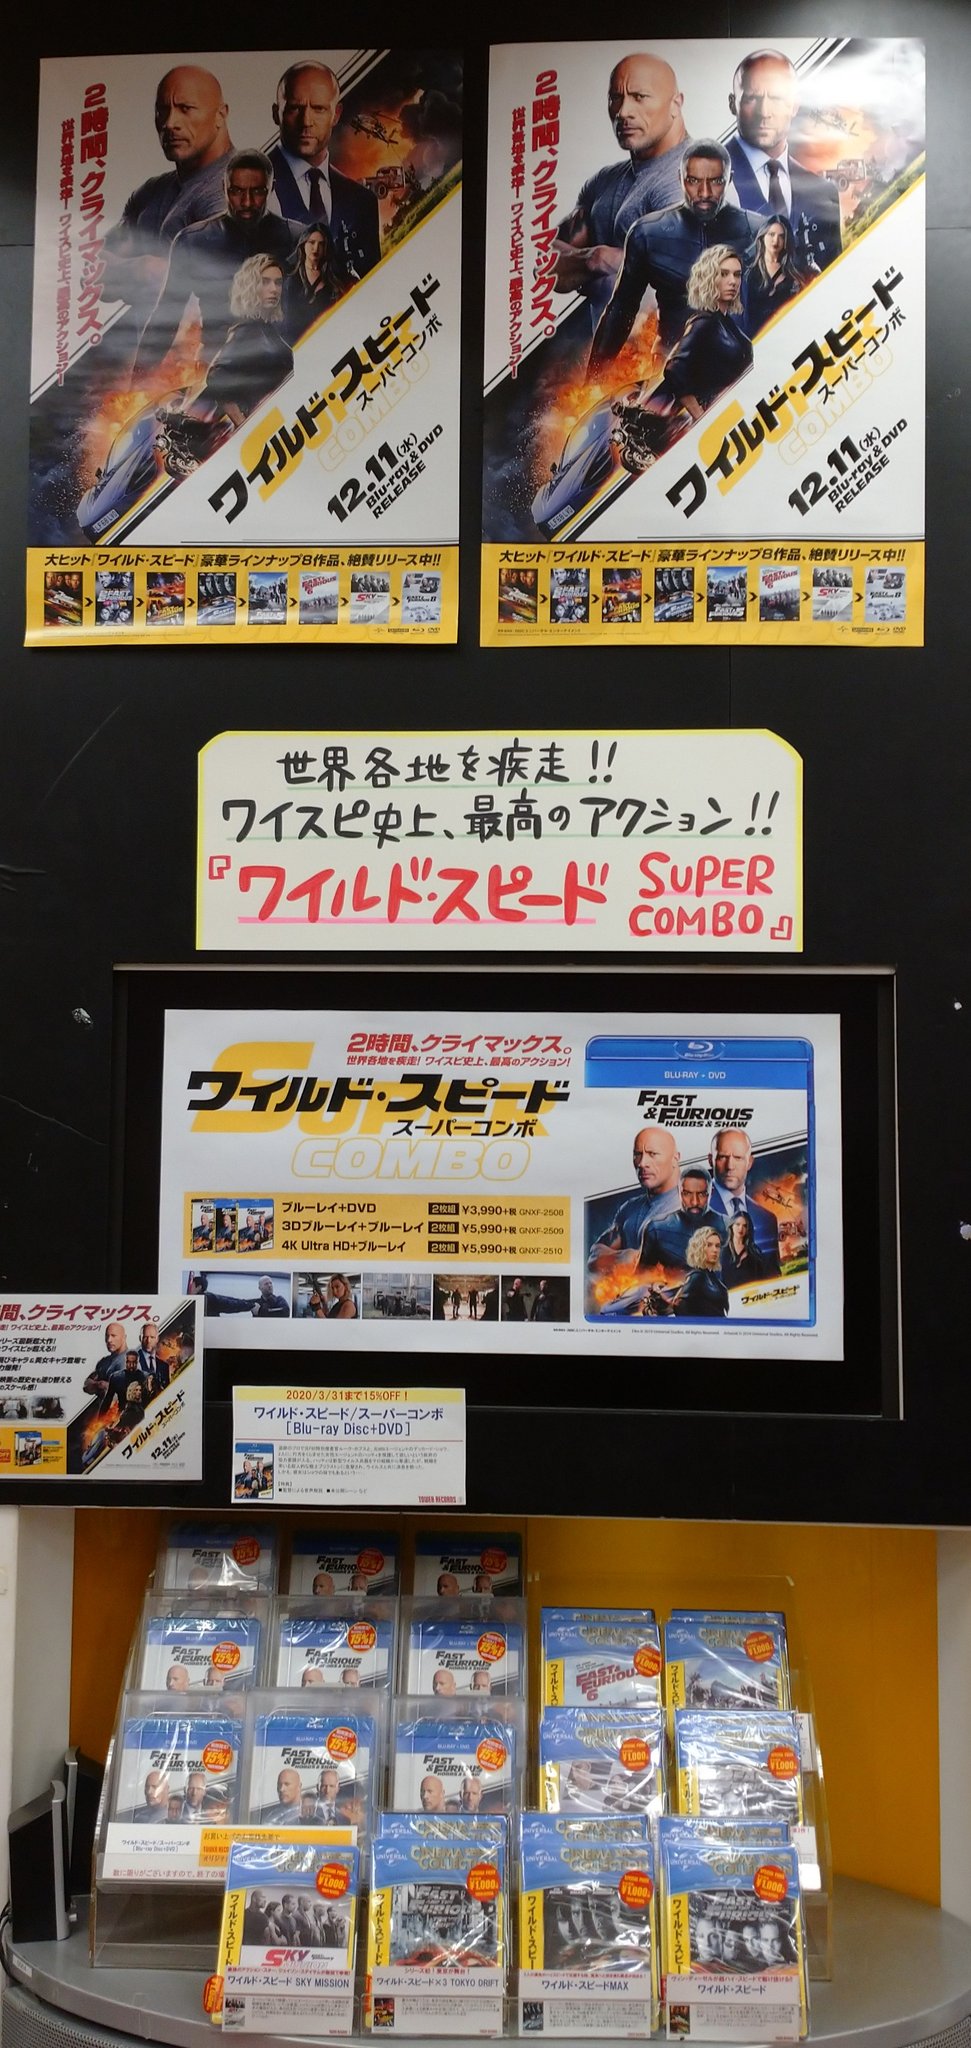 ワイルド スピード スーパー コンボ dvd